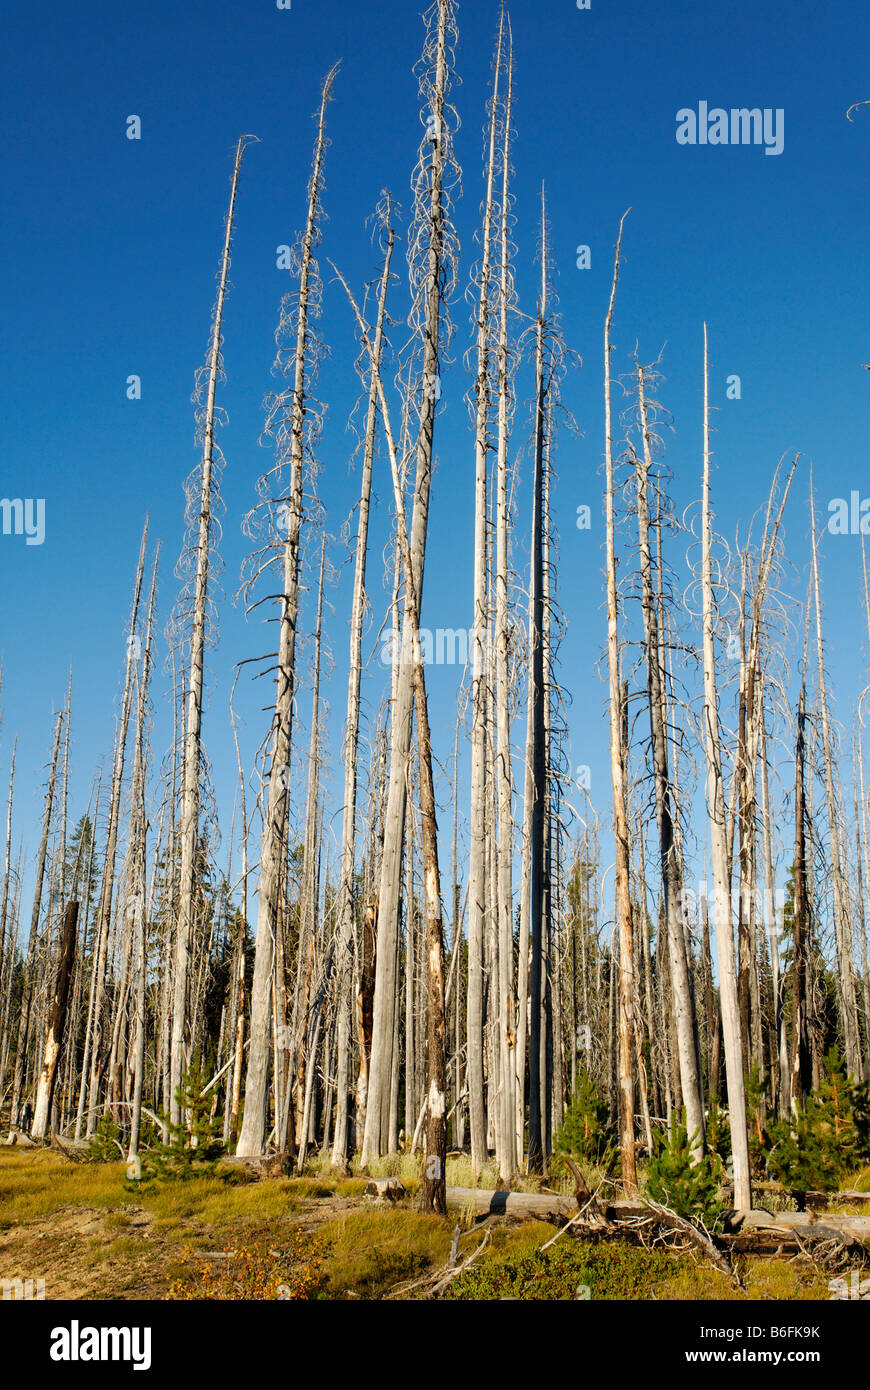 Nuova vita risveglio dopo un incendio di foresta, bruciati alberi carbonizzati, Metolius Valley, la cascata di gamma, Oregon, Stati Uniti d'America Foto Stock